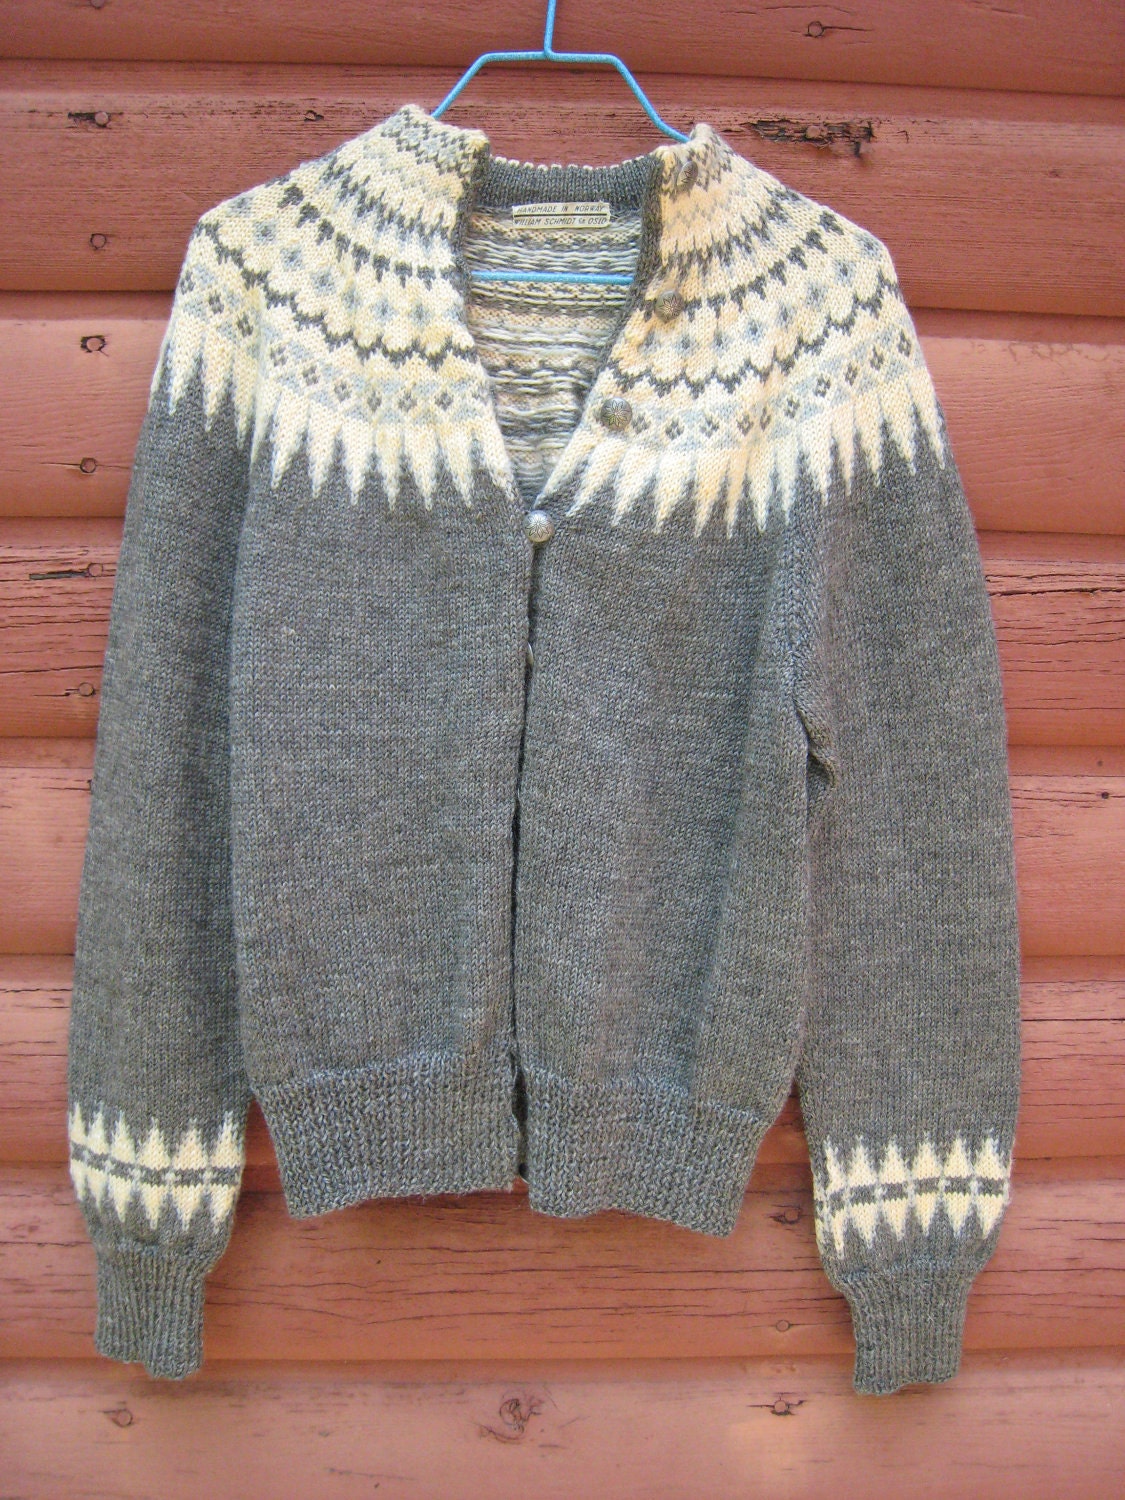 Vintage Handmade Wool Sweater by William Schmidt Co of Oslo Norway